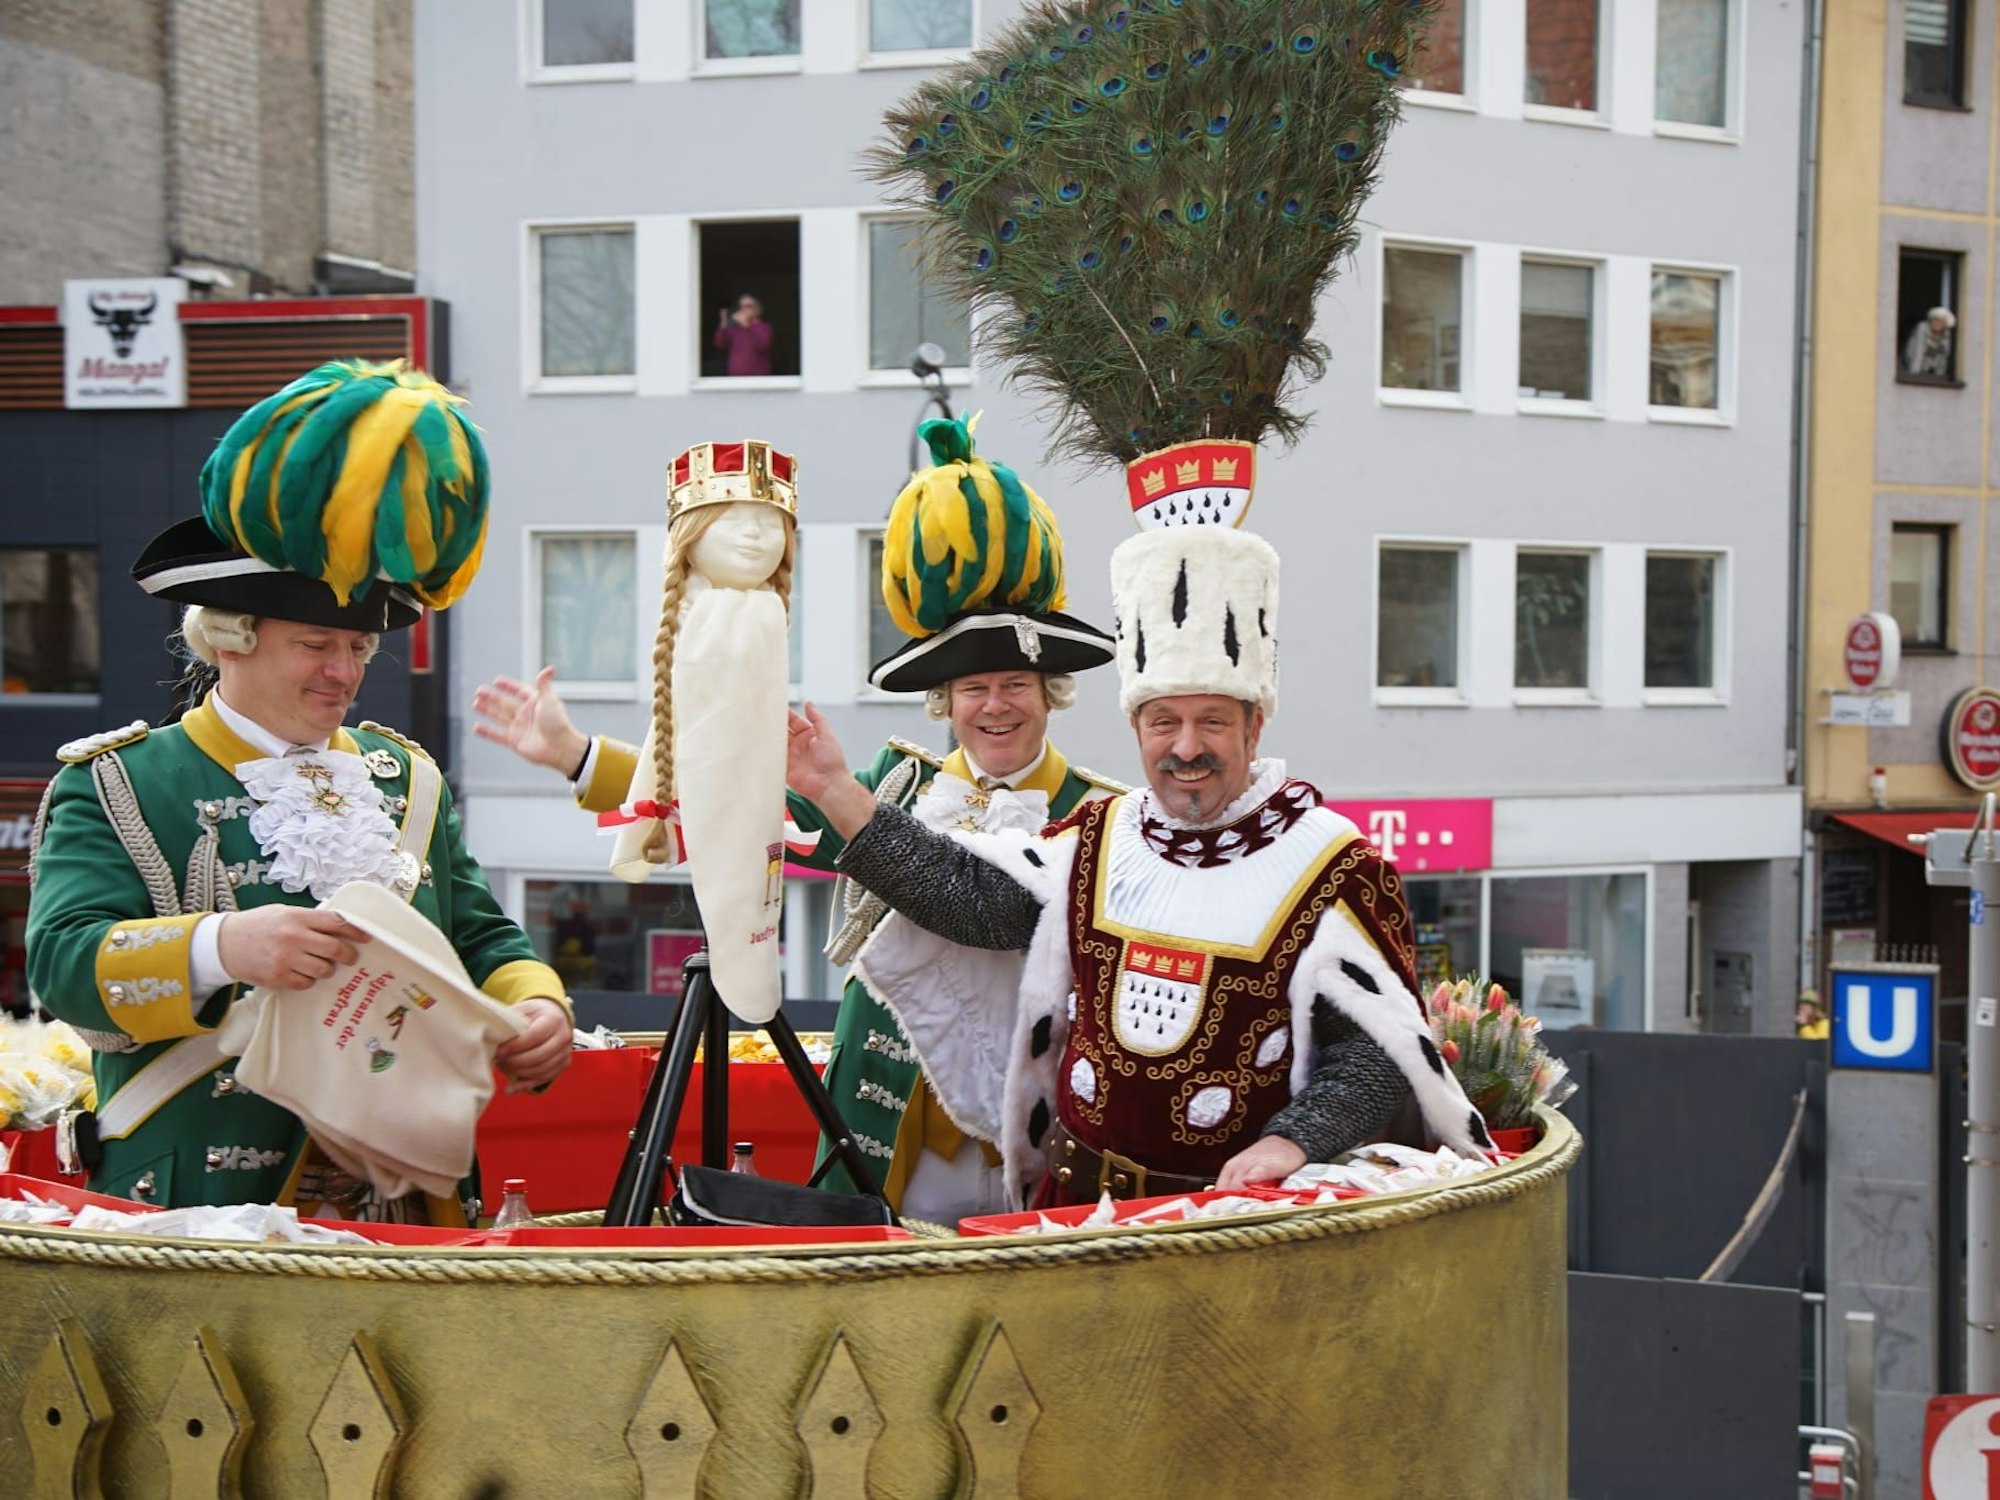 Auf einem Karnevalswagen präsentiert Bauer Werner eine Puppe, die Krone und Perücke der Jungfrau trägt.